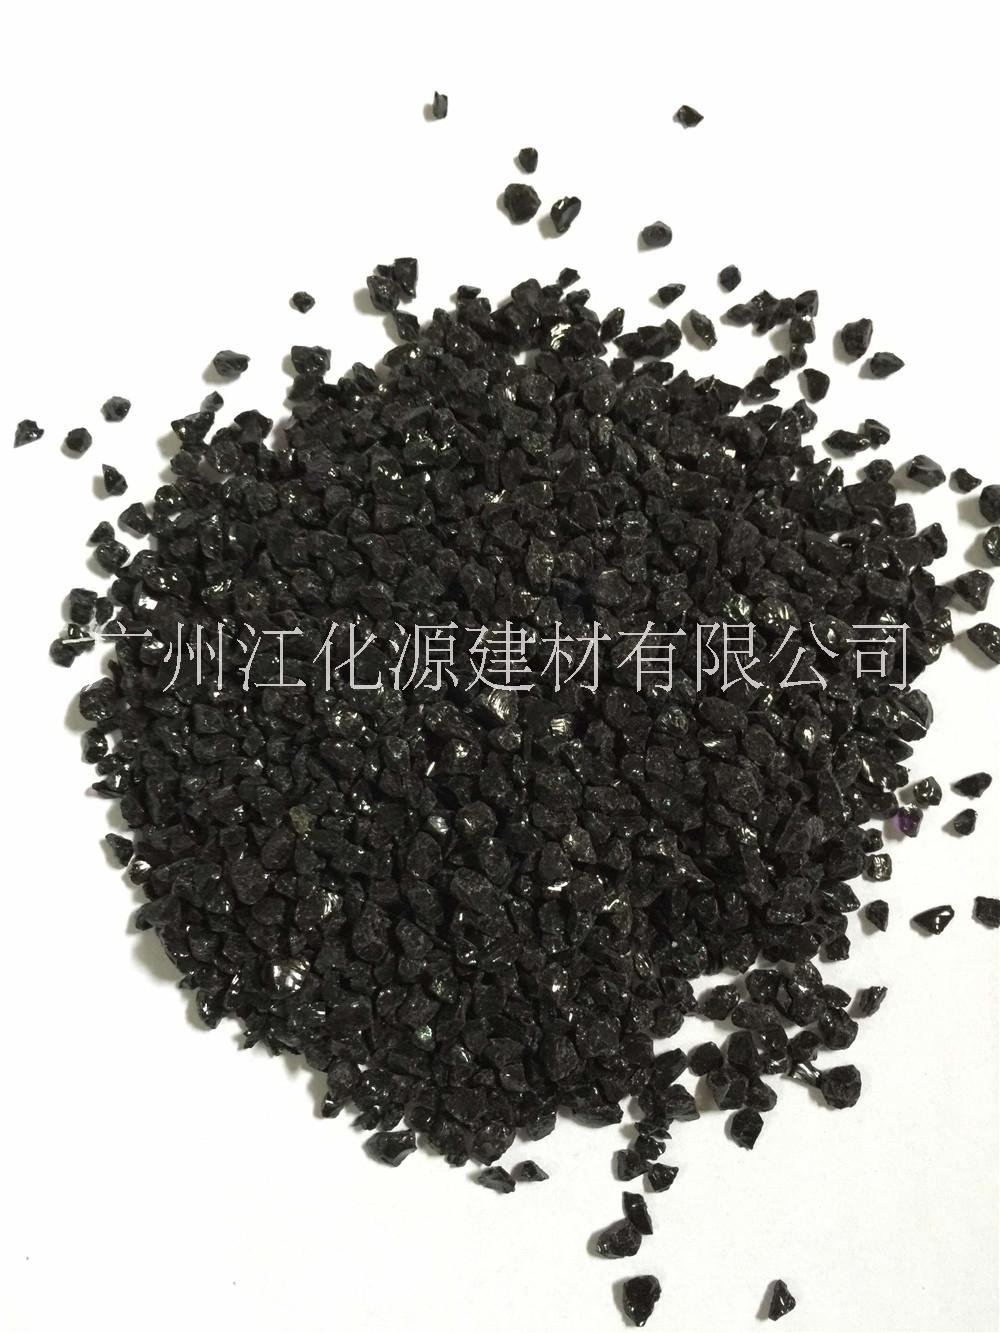 广州全国黑瓷厂家直销  大量供应人造石、石英石原材料黑瓷玻璃颗粒图片